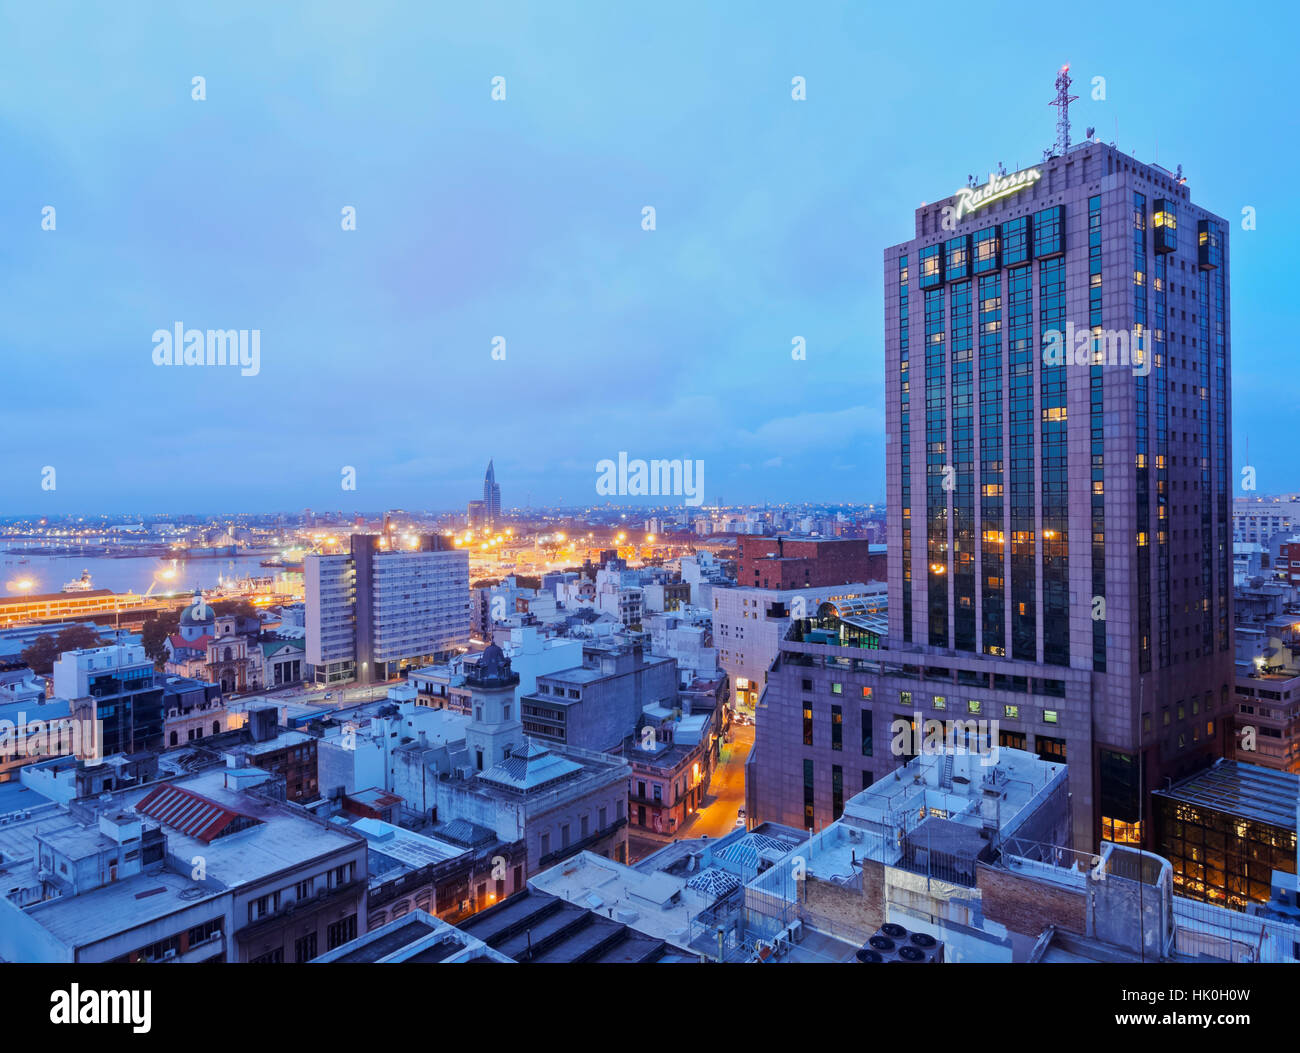 Une vue sur le centre-ville avec le bâtiment caractéristique de l'hôtel Radisson, Montevideo, Uruguay, Amérique du Sud Banque D'Images